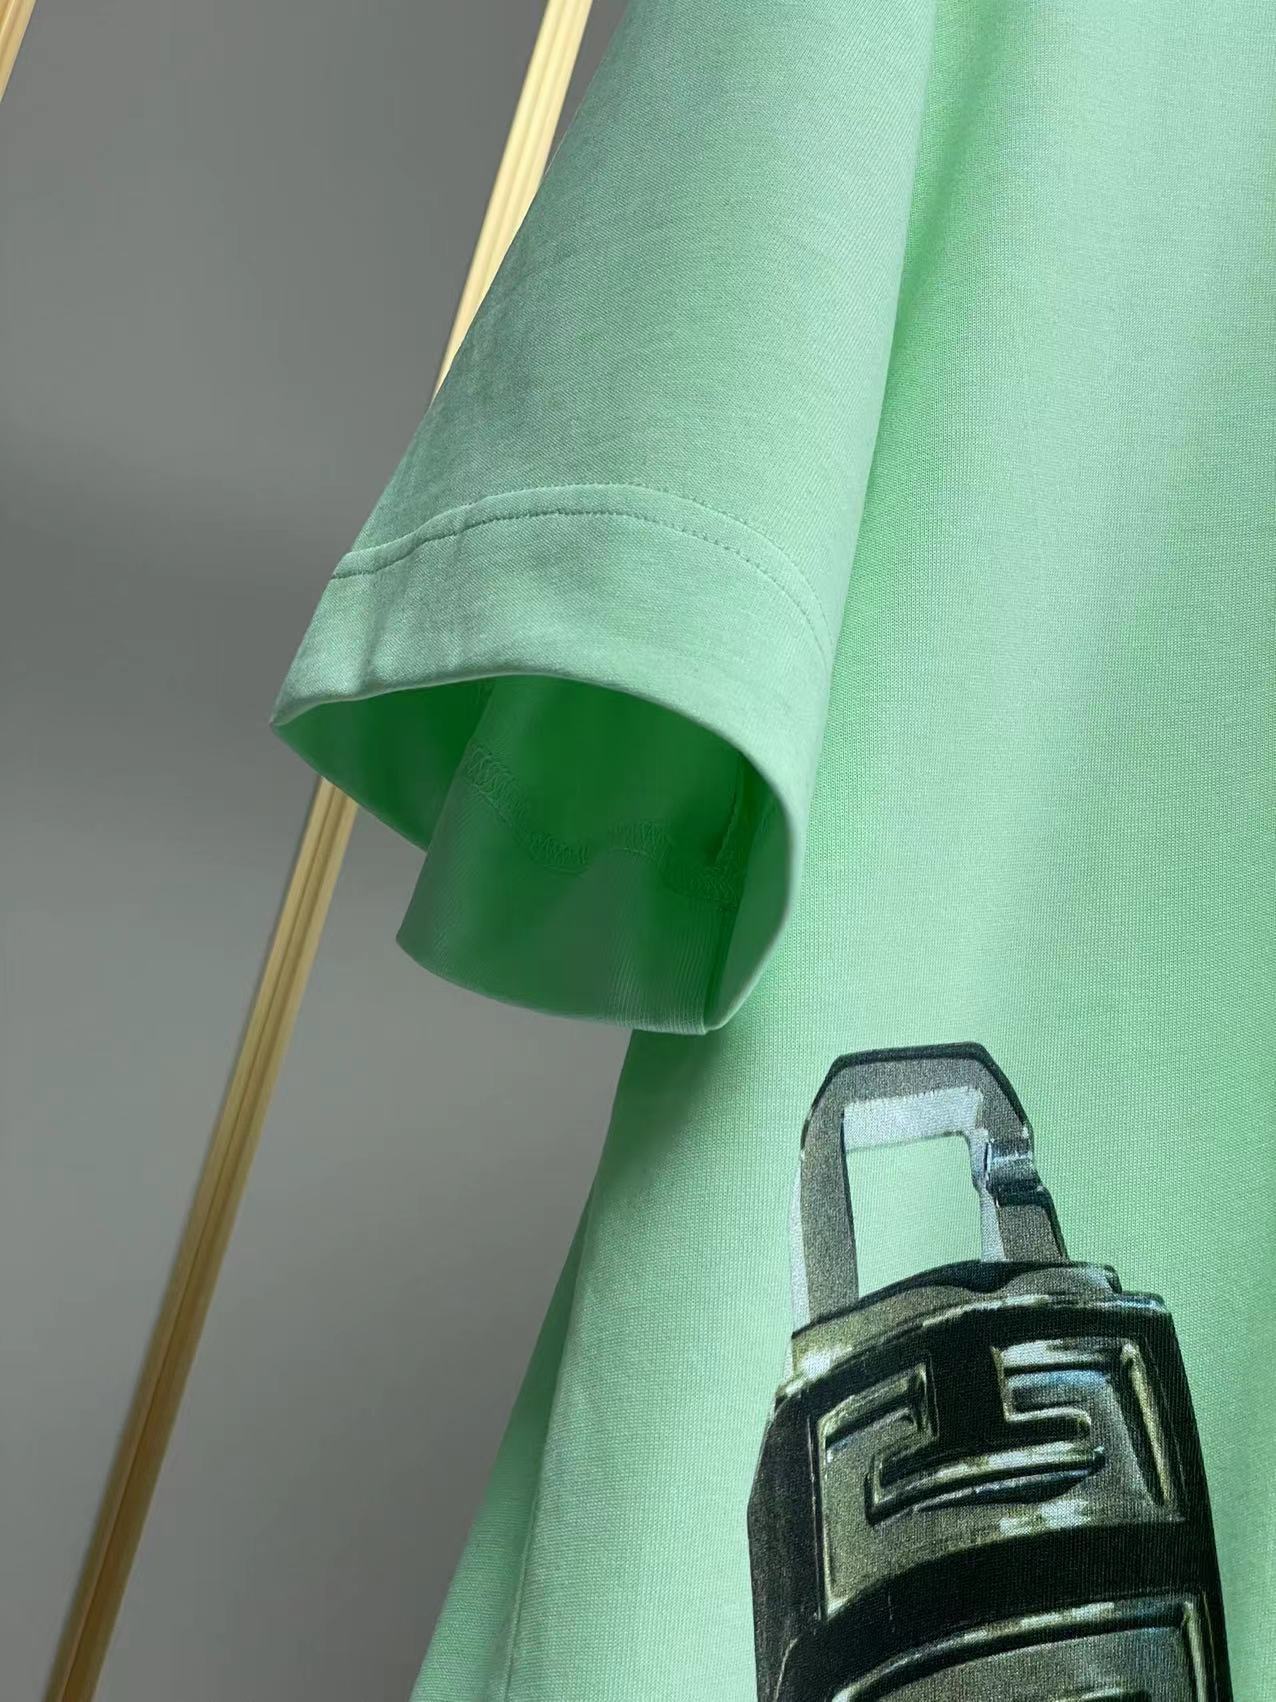 ジバンシィtシャツ激安通販 純綿 短袖 トップス ファッション ロックプリント 柔らかい 大販売 2色可選 グリーン_6